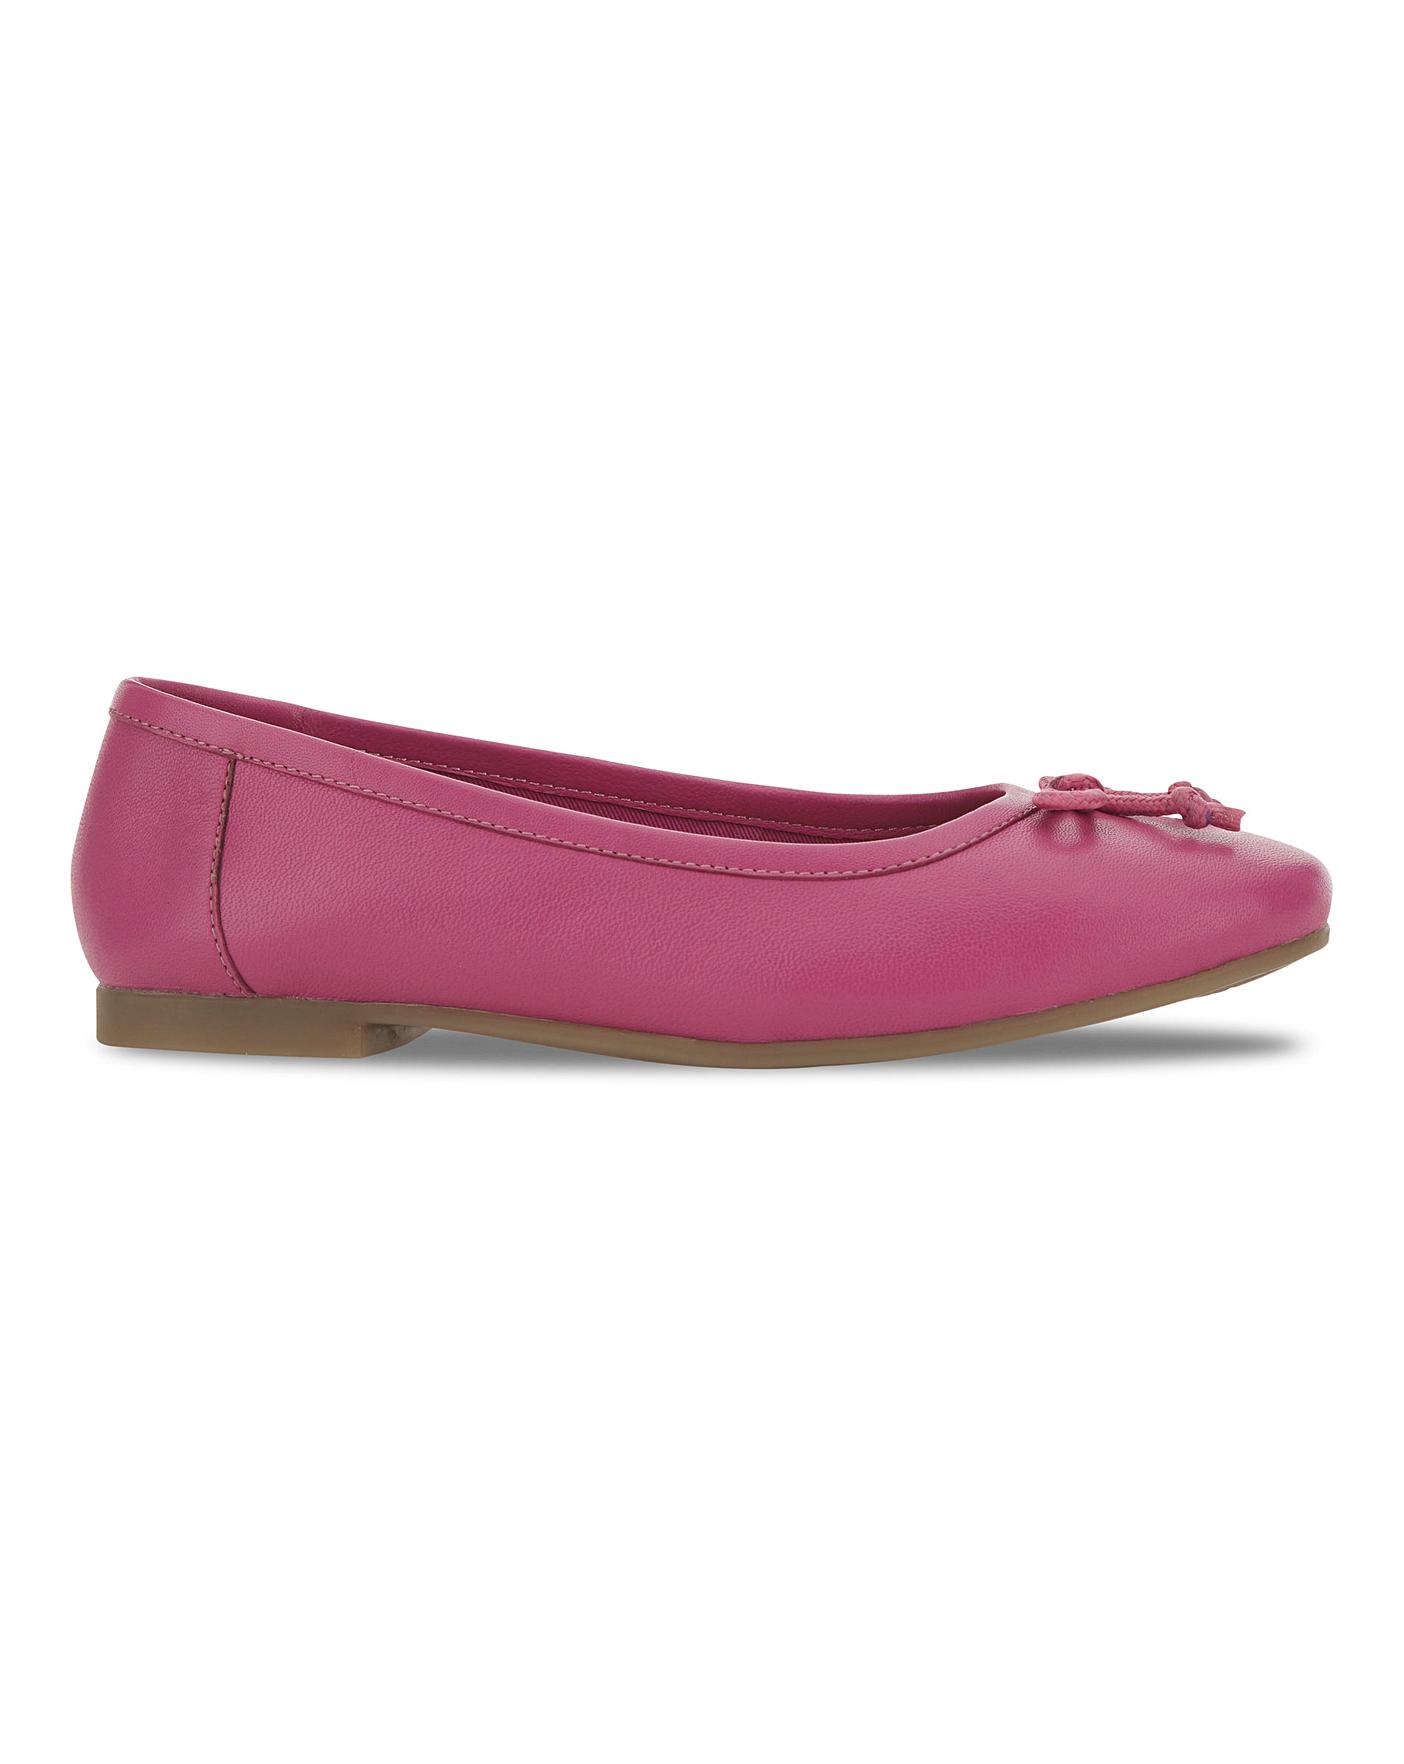 Buy > wide ballerina shoes > in stock